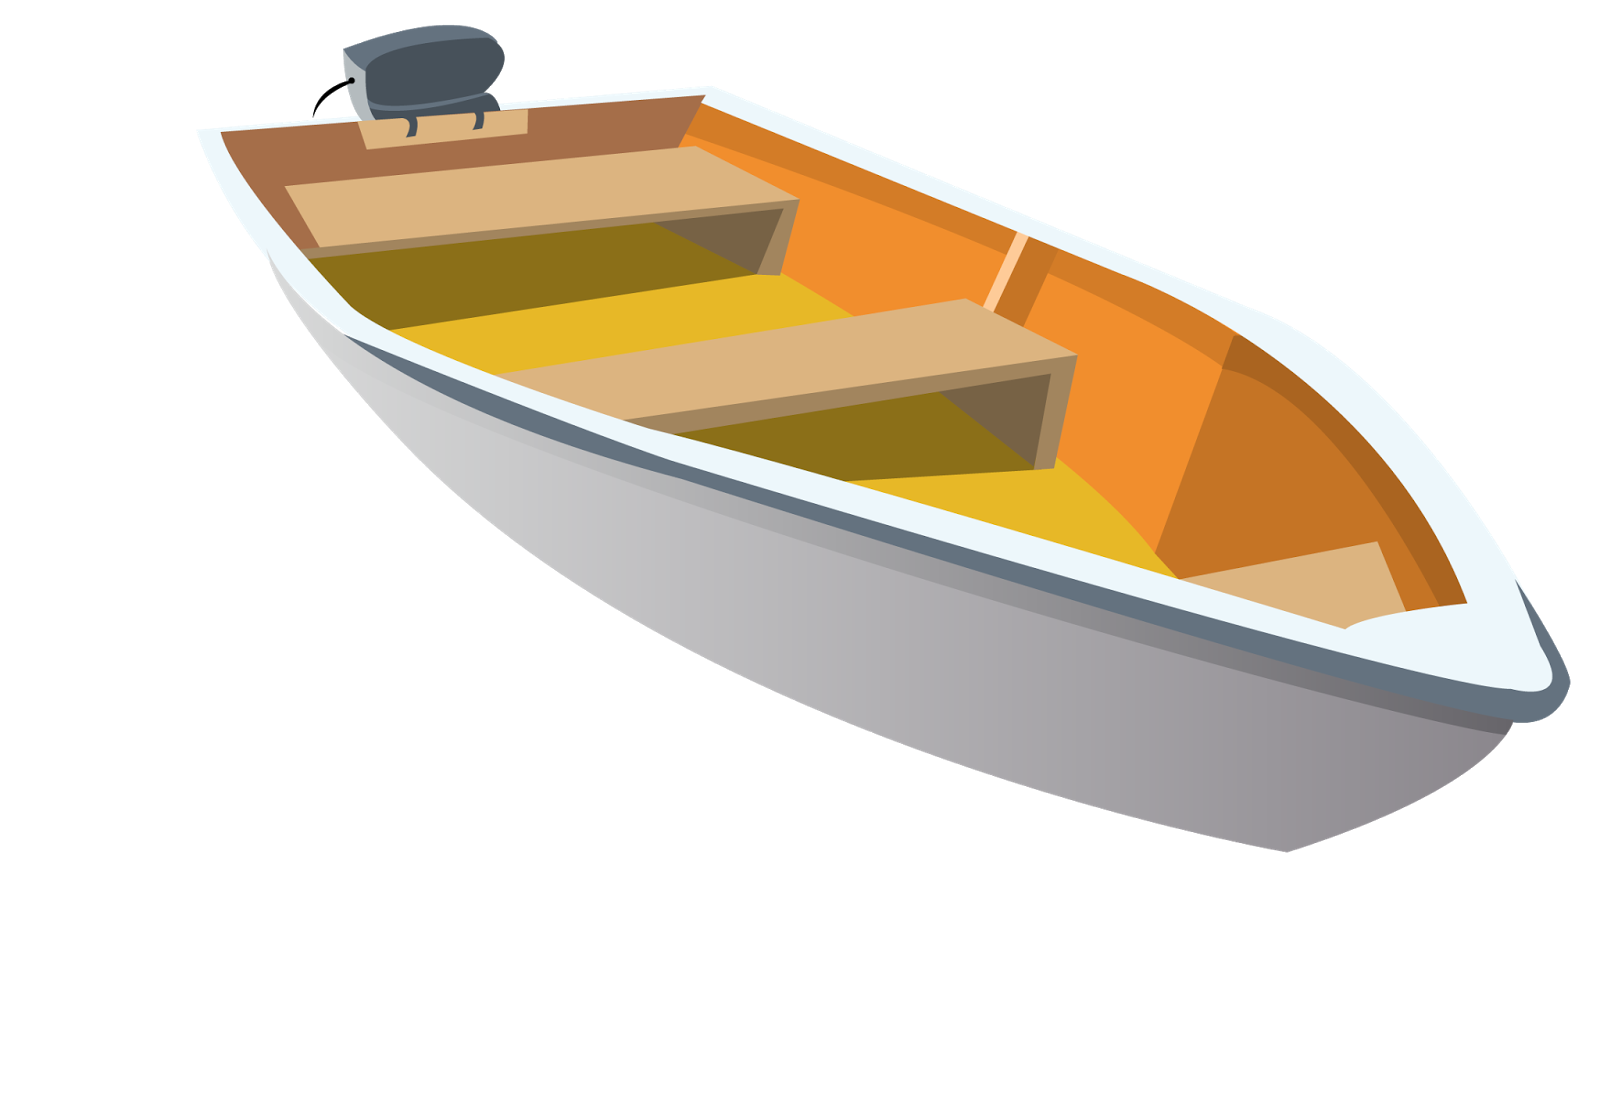 Лодка картинка для детей на прозрачном фоне. Лодка сбоку. Лодка для детей. Лодка на прозрачном фоне. Лодка для дошкольников.